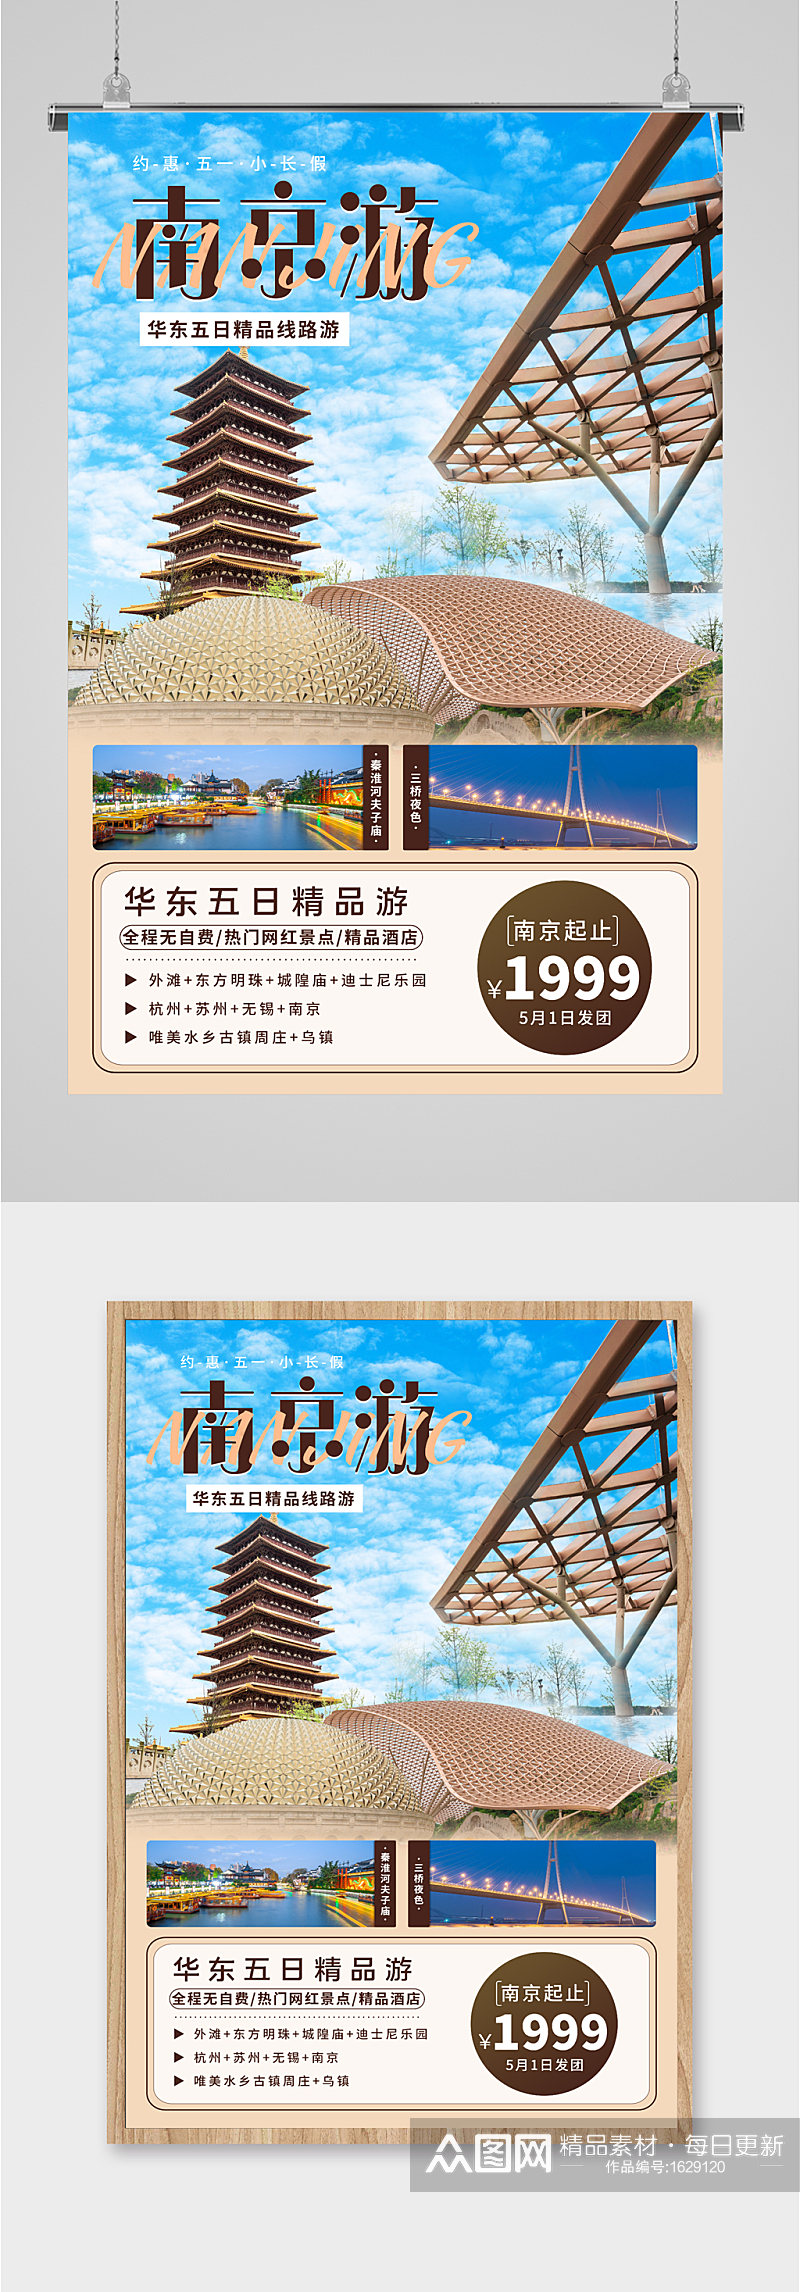 南京旅游活动优惠海报素材